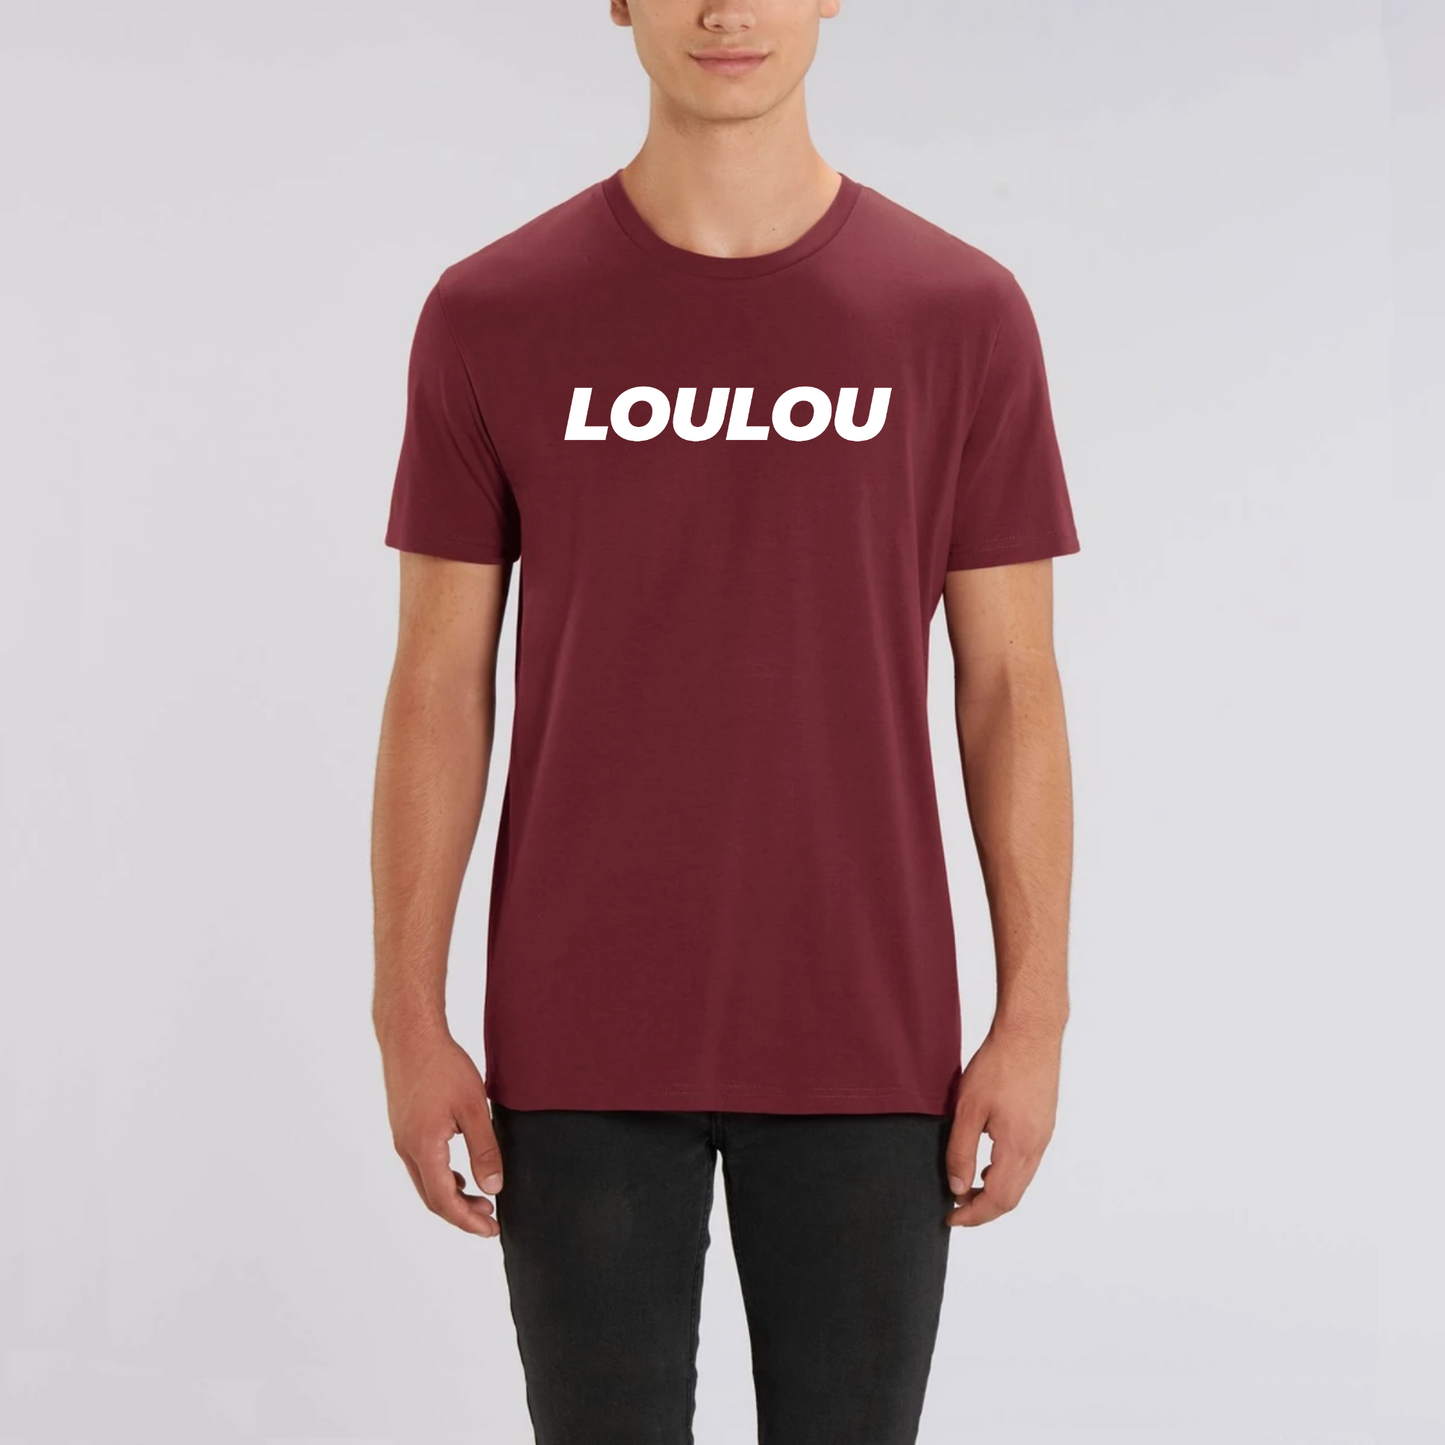 t-shirt loulou, T-French, t-shirt homme, coton bio, t-shirt saint valentin, t-shirt surnom, t-shirt humour, Bordeaux